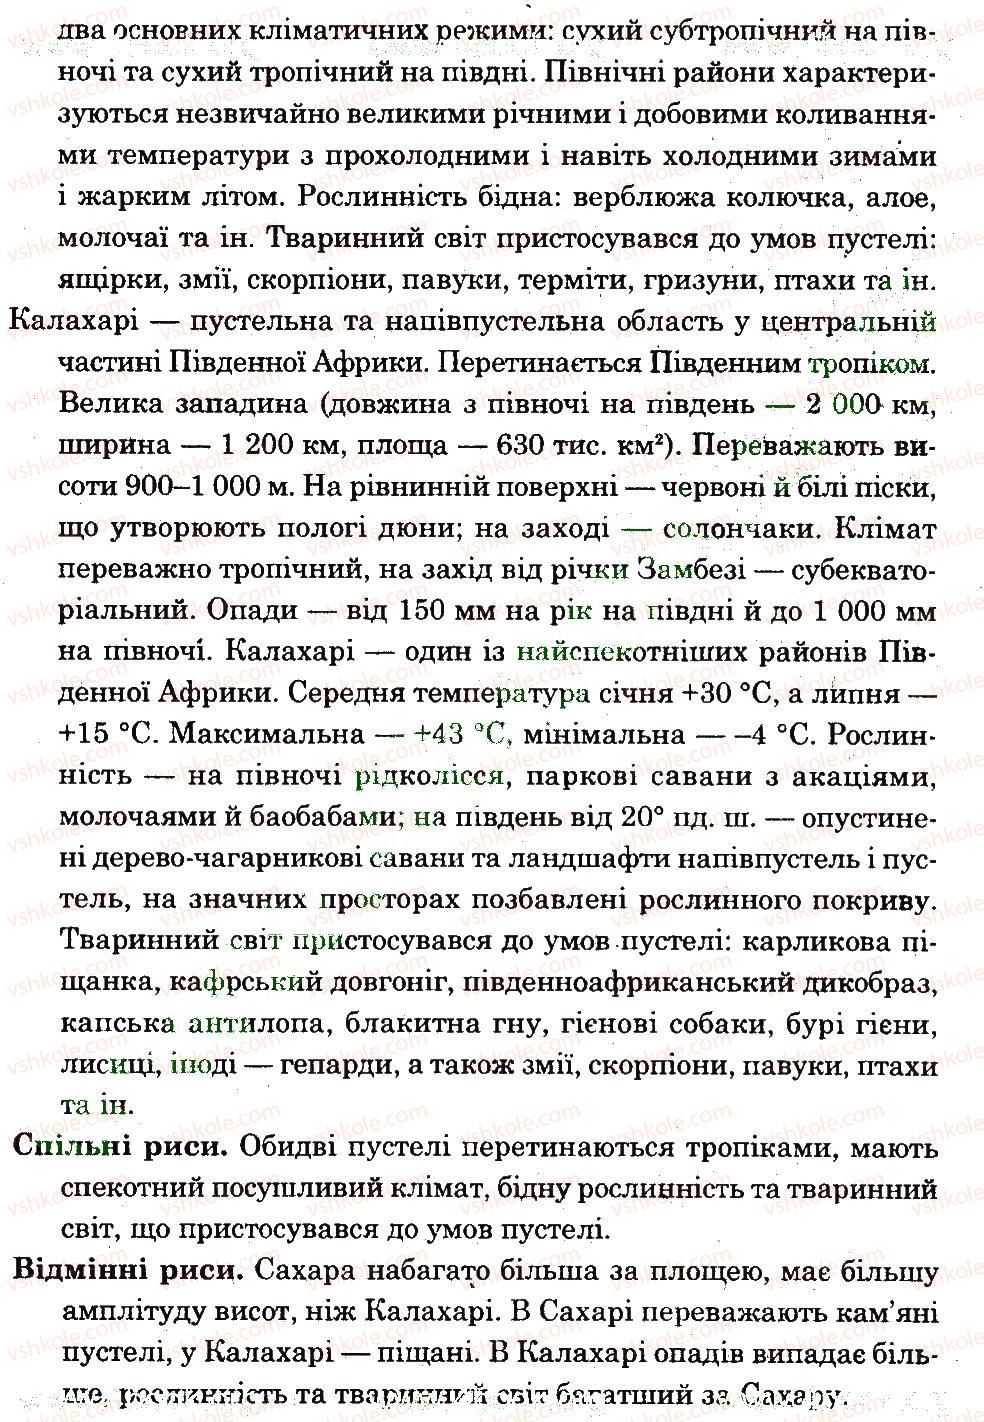 7-geografiya-og-stadnik-vf-vovk-2012-zoshit-dlya-praktichnih-robit--tematichnij-blok-2-variant-1-12-rnd4695.jpg